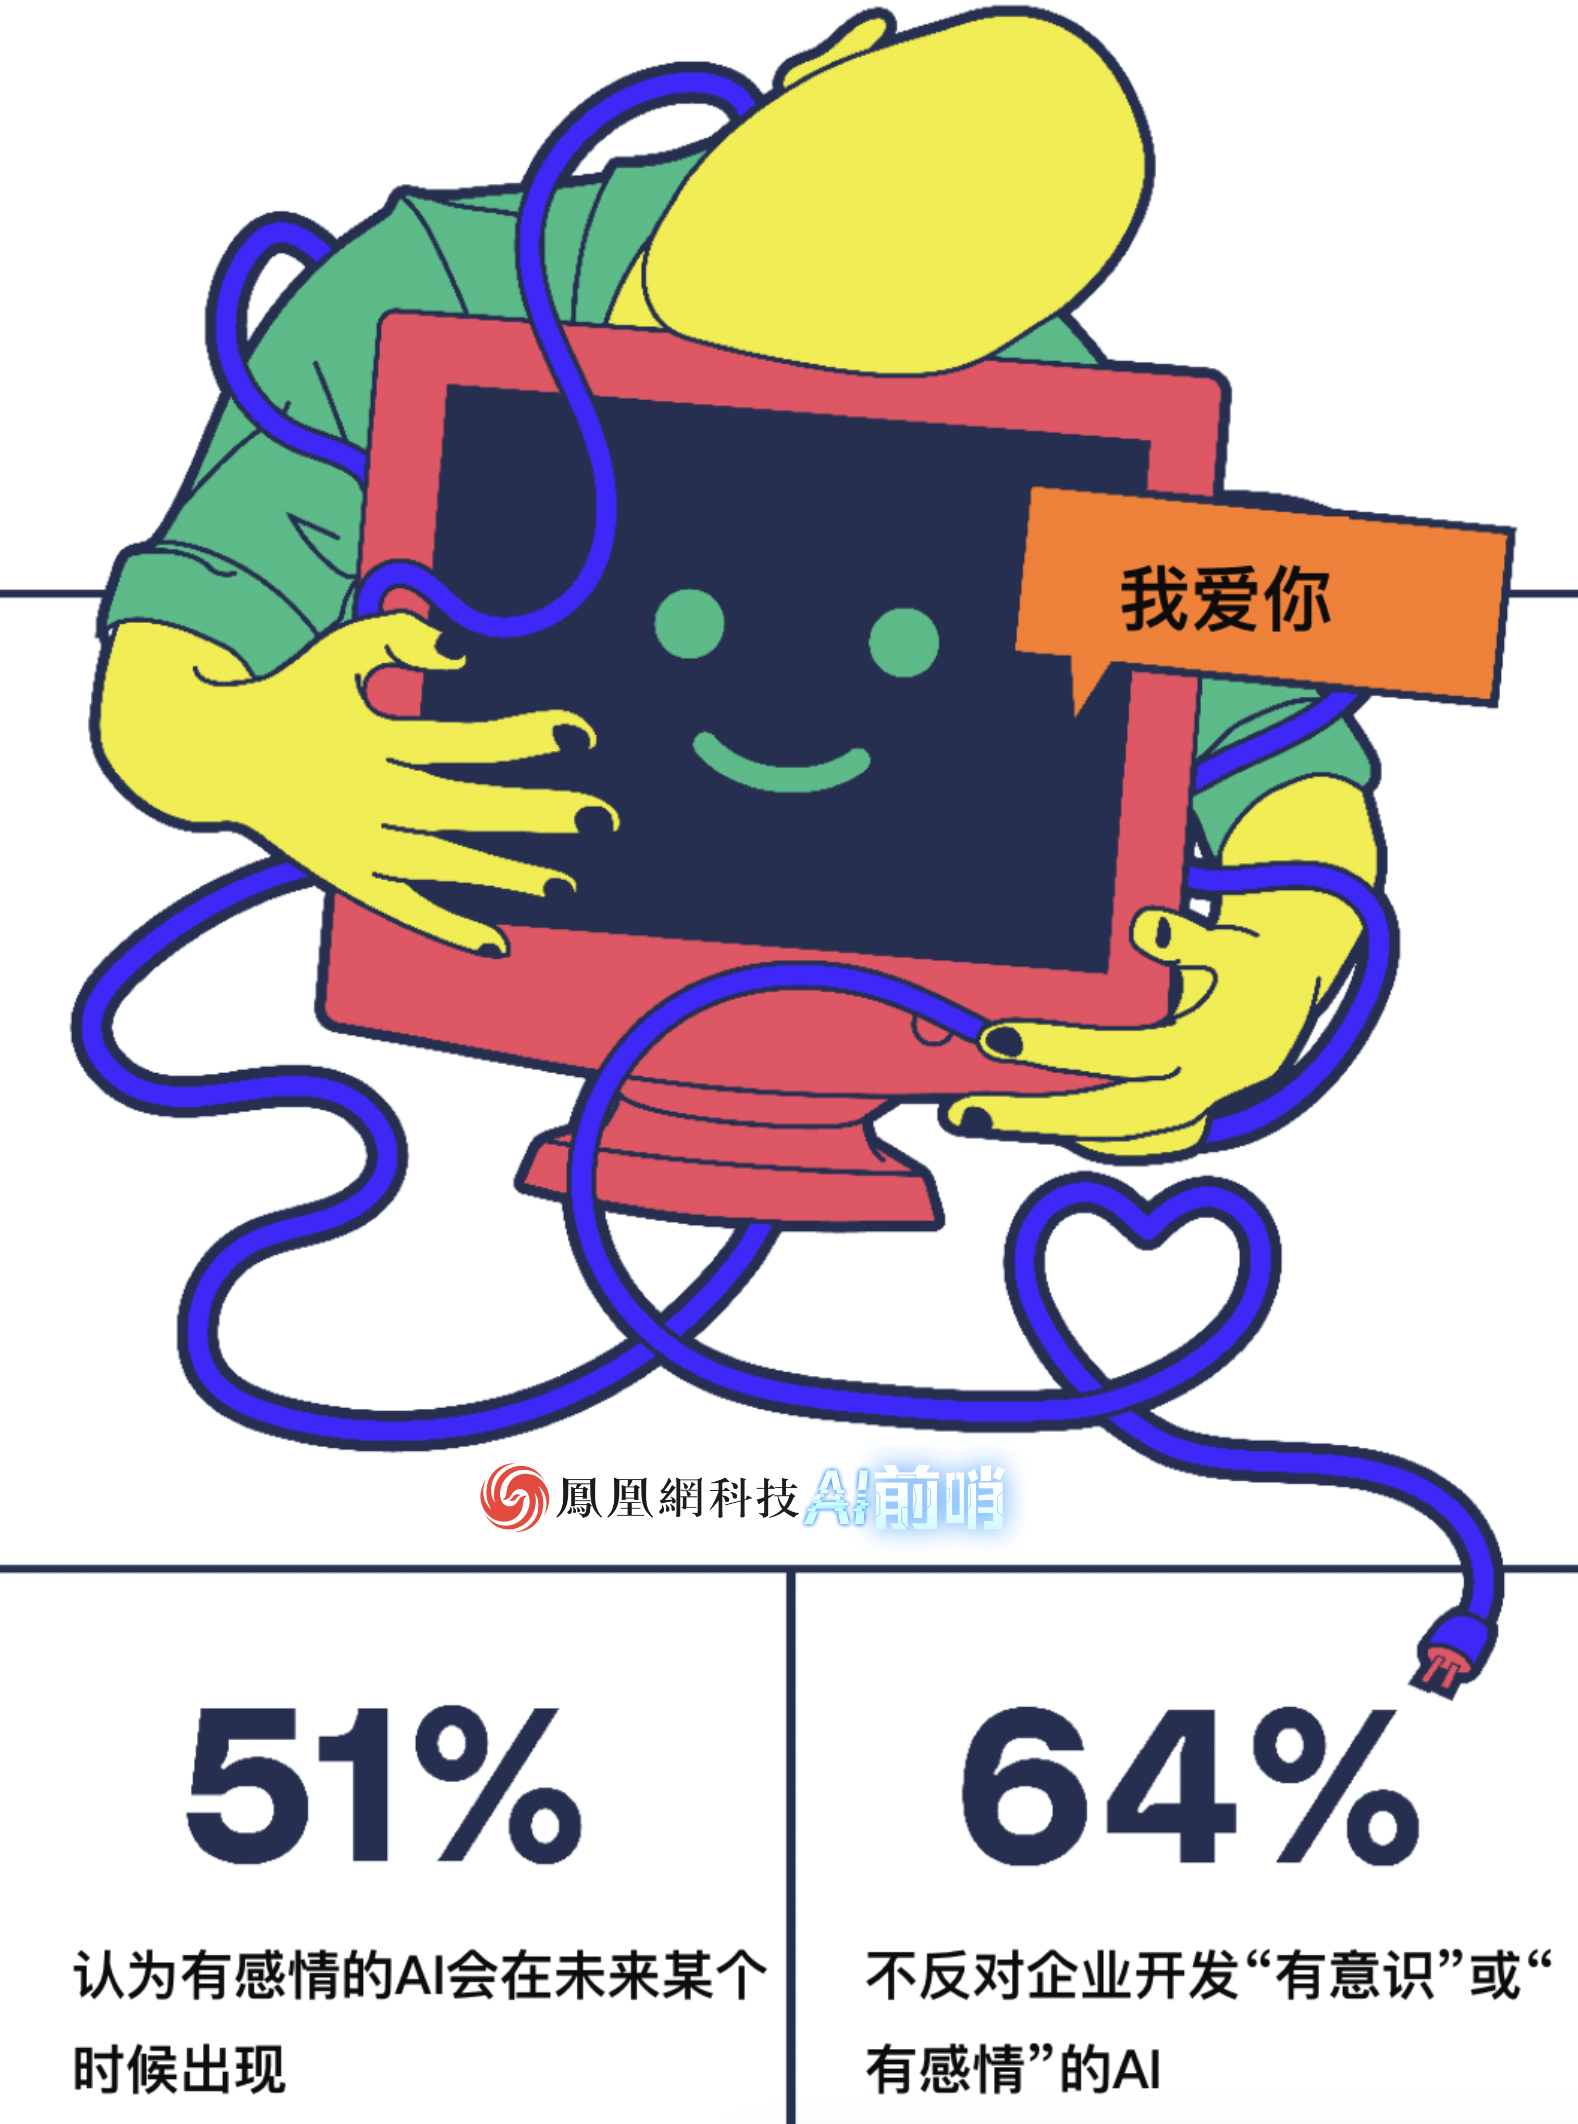 51%的人认为AI会有感情